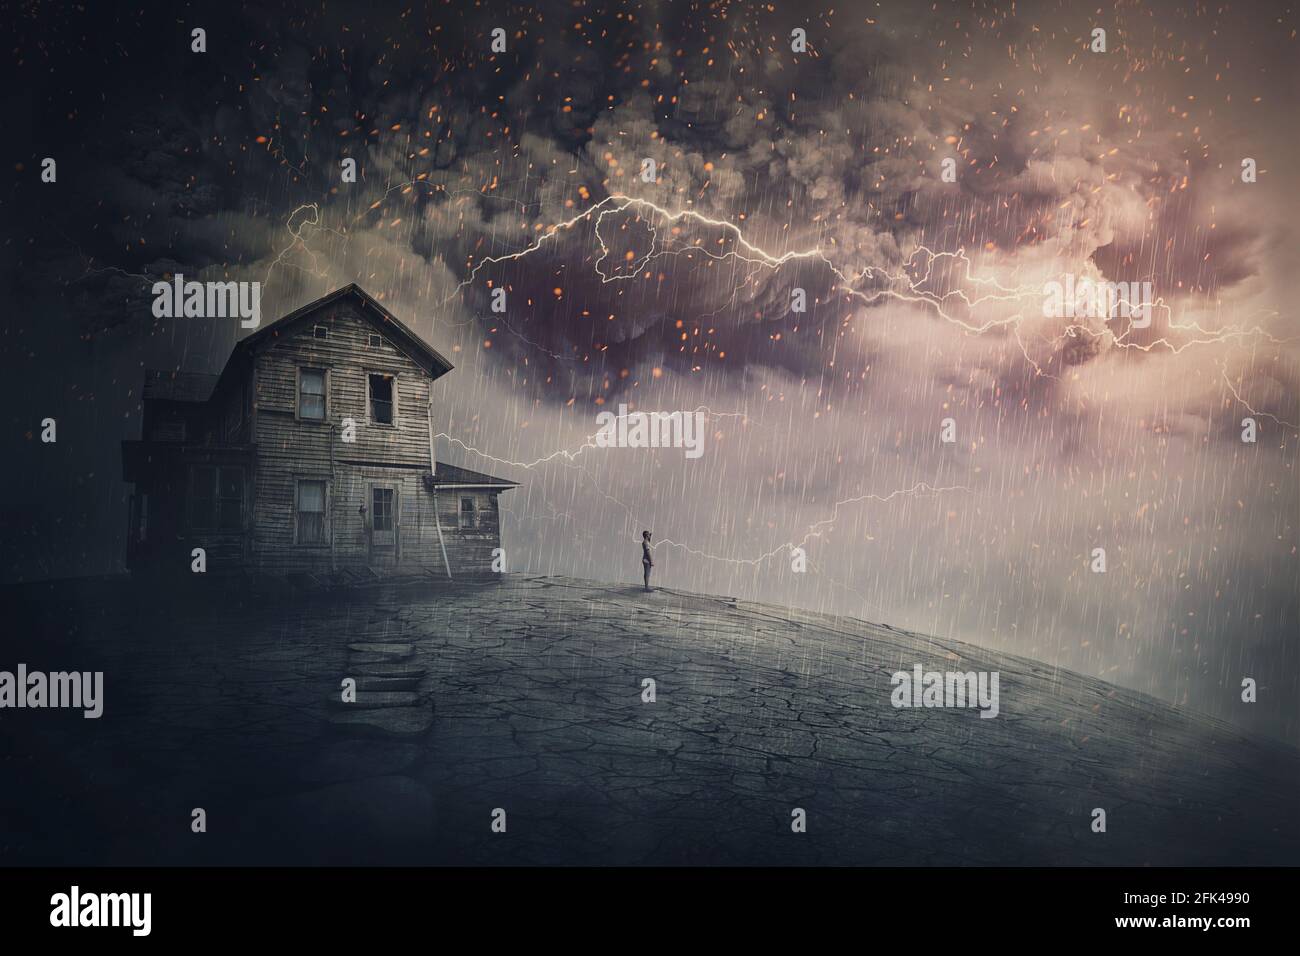 Scène de tempête effrayante avec des éclairs effrayants sur une terre fantôme avec une maison hantée et un fantôme de personne debout sous la pluie. Hôtel particulier désolé faisant face à une h Banque D'Images